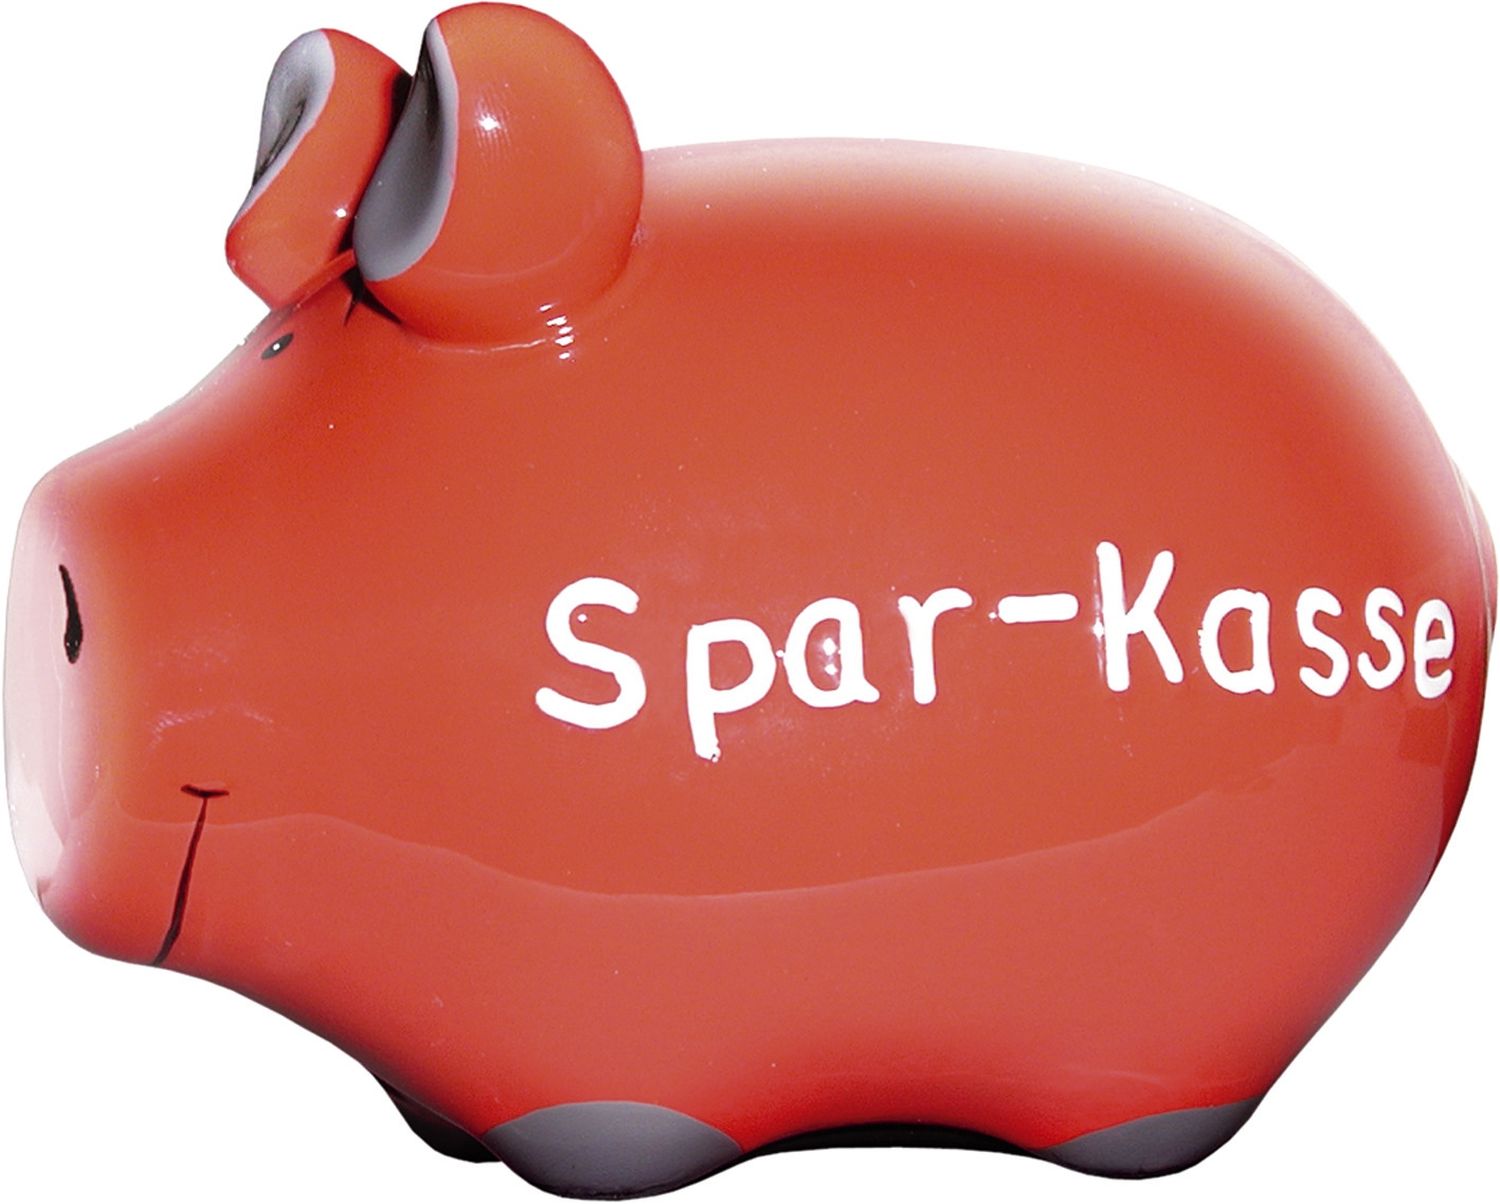 Spardose Schwein "Spar-Kasse" - Keramik, klein